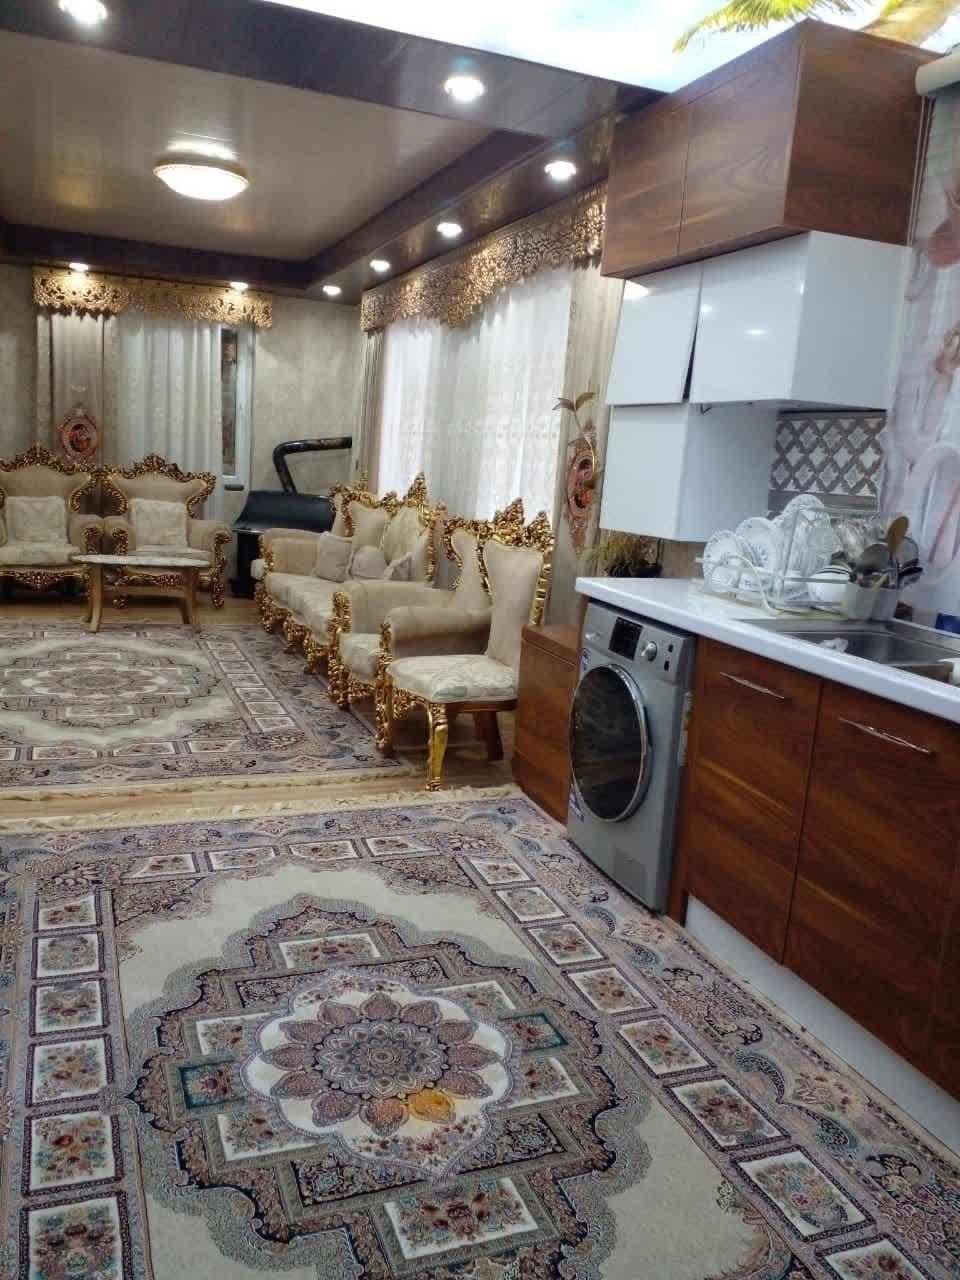 فروش خانه ویلایی شیک و فول بازسازی شده با قیمت استثنایی در لاهیجان